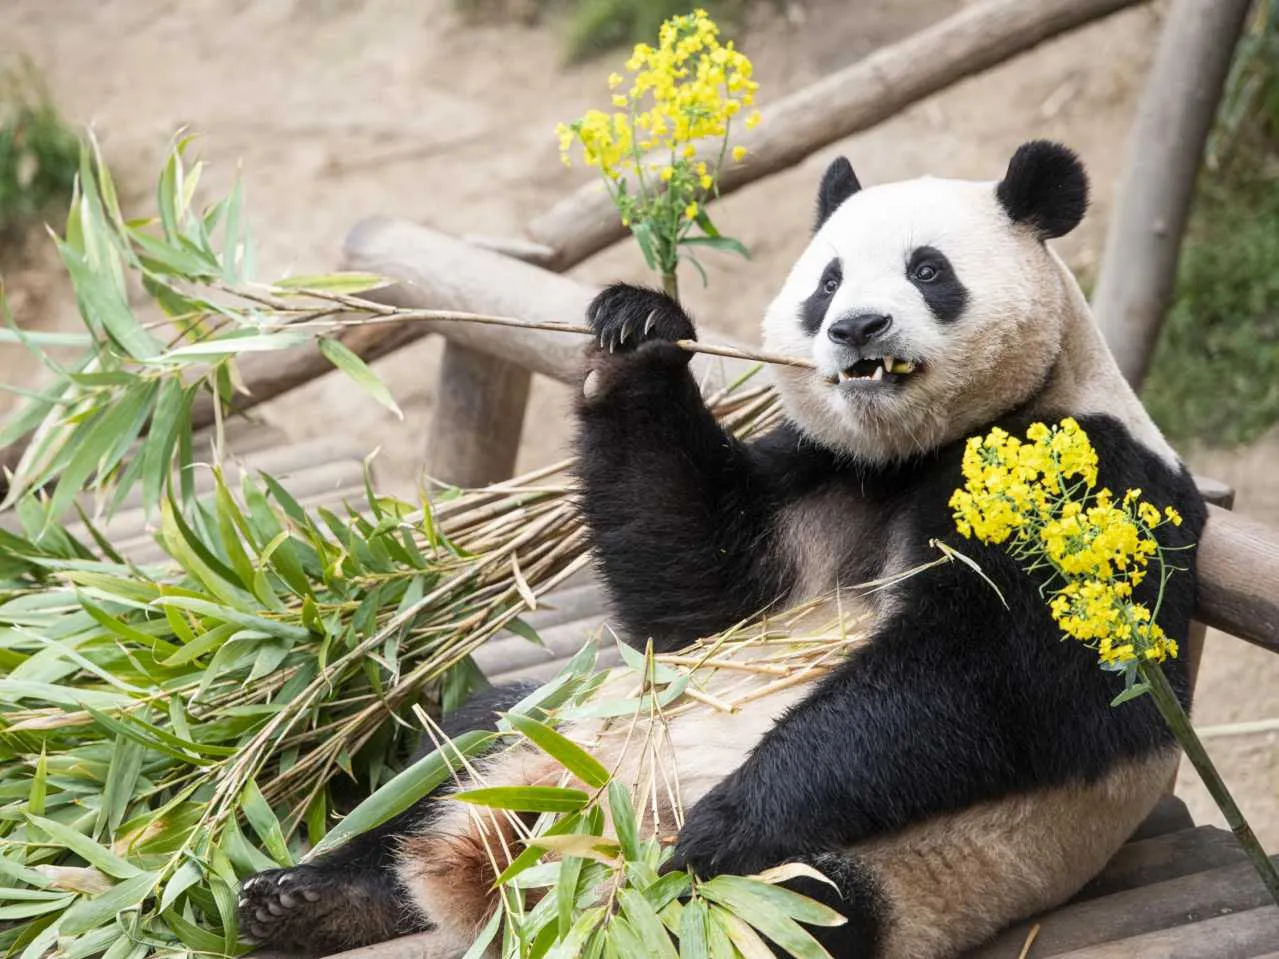 Gaint panda eating bambbo